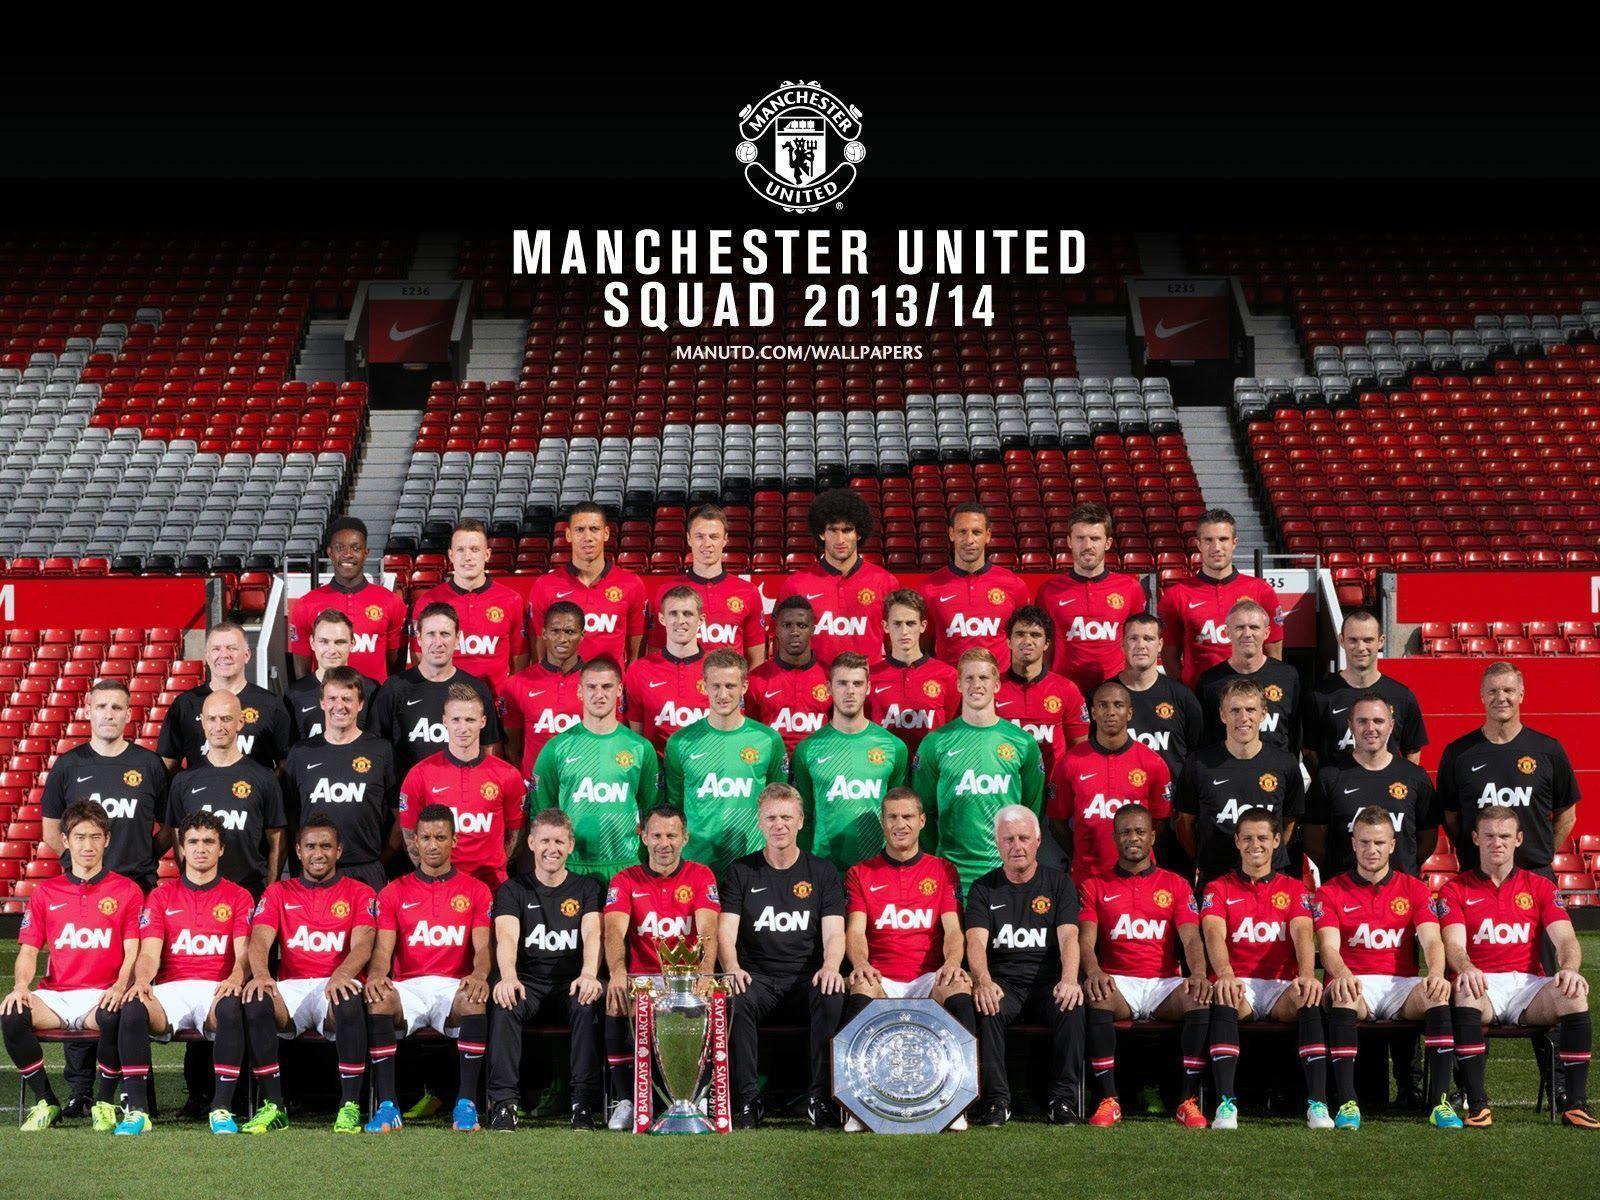 Manchester United Wallpaper Full Team 2016 Manchester United 2013